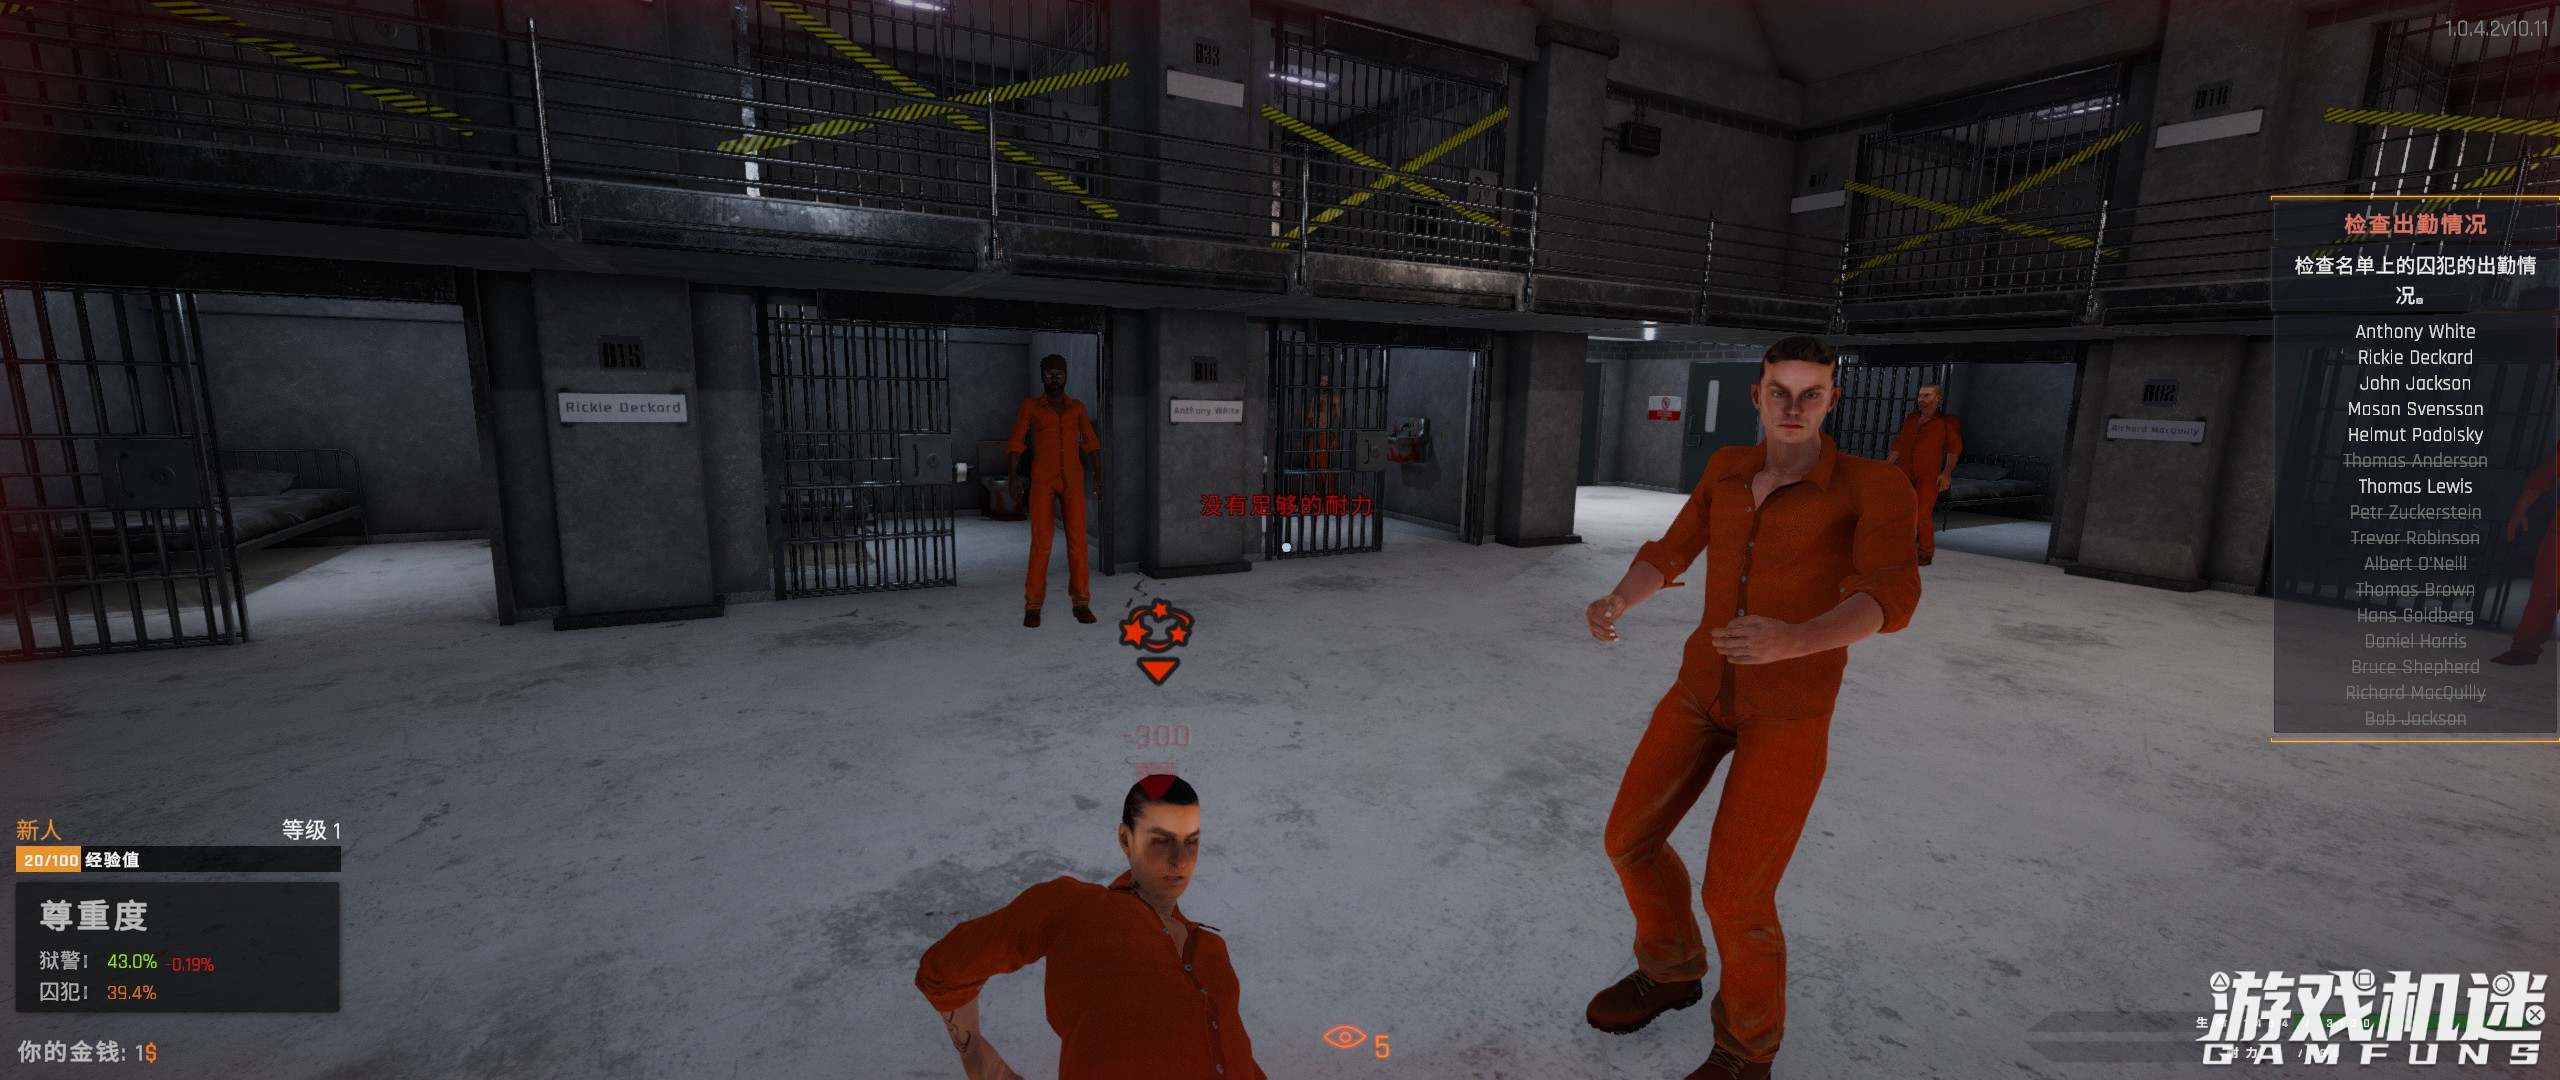 监狱模拟器游戏评测20211112005